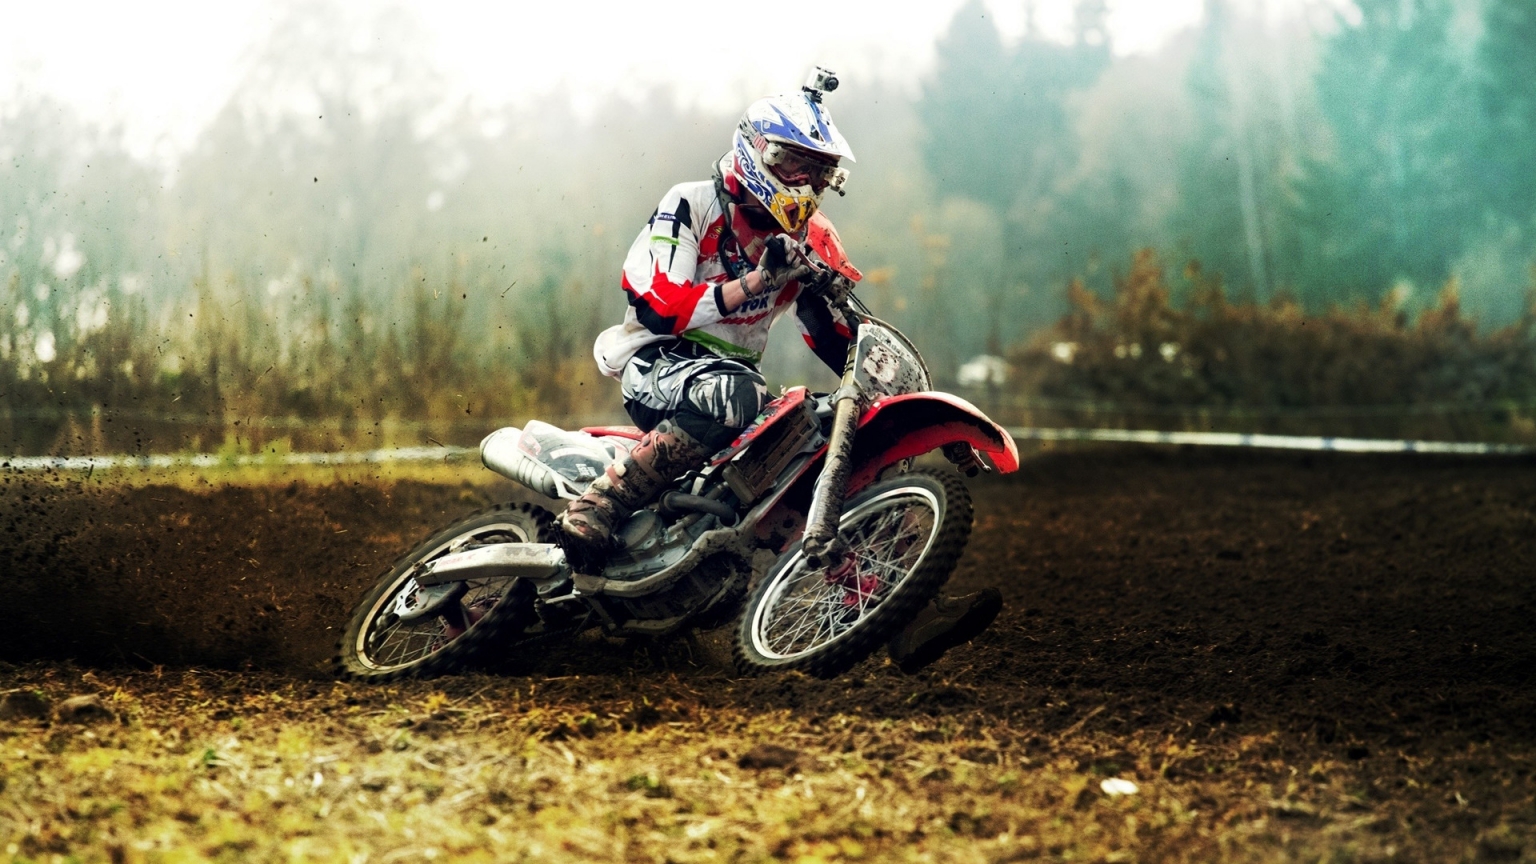 Motocross for 1536 x 864 HDTV resolution